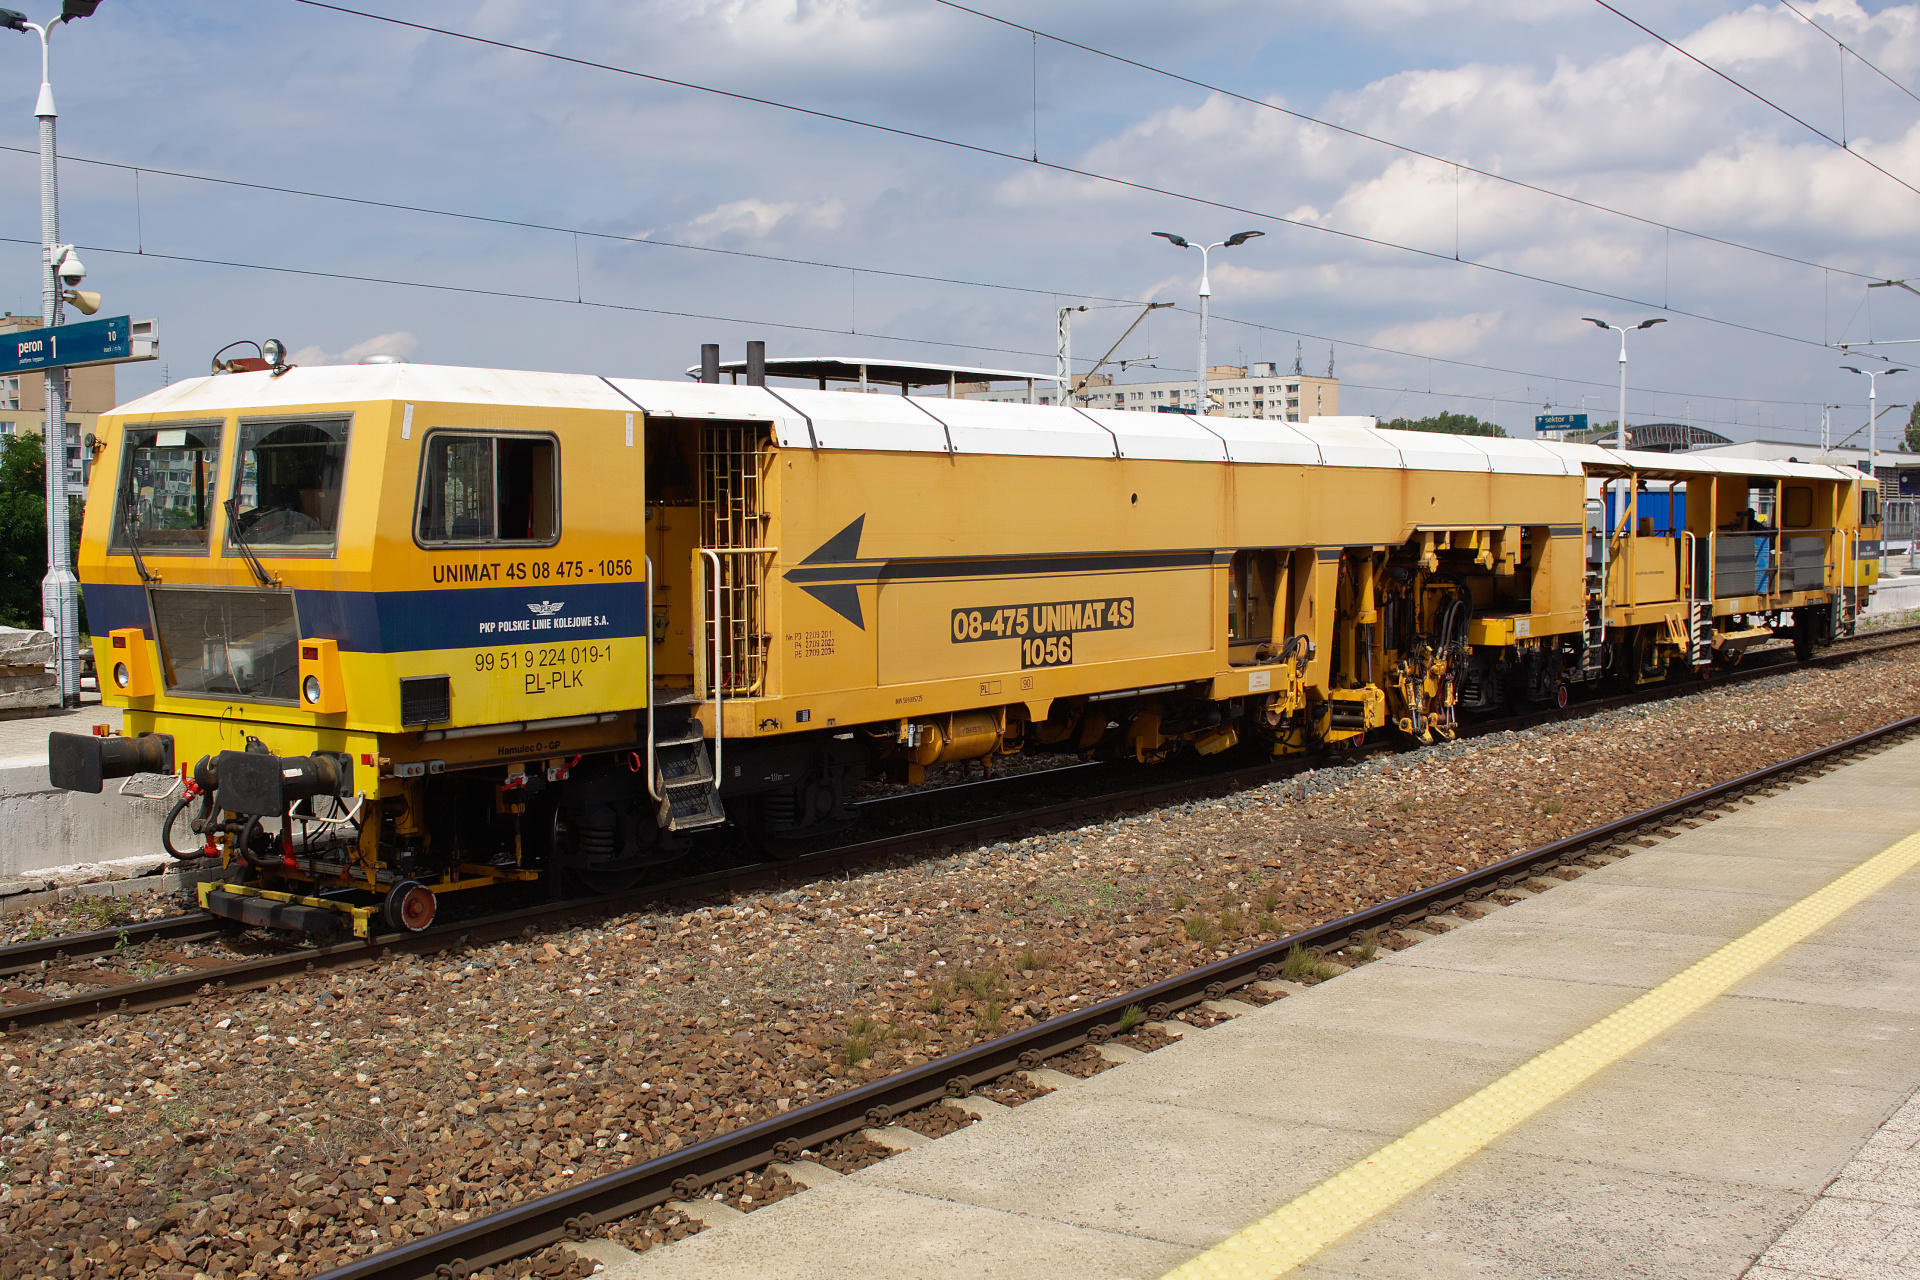 Plasser & Theurer Unimat 08-475/4S 1056 (Vehicles » Trains and Locomotives » Maintenance)